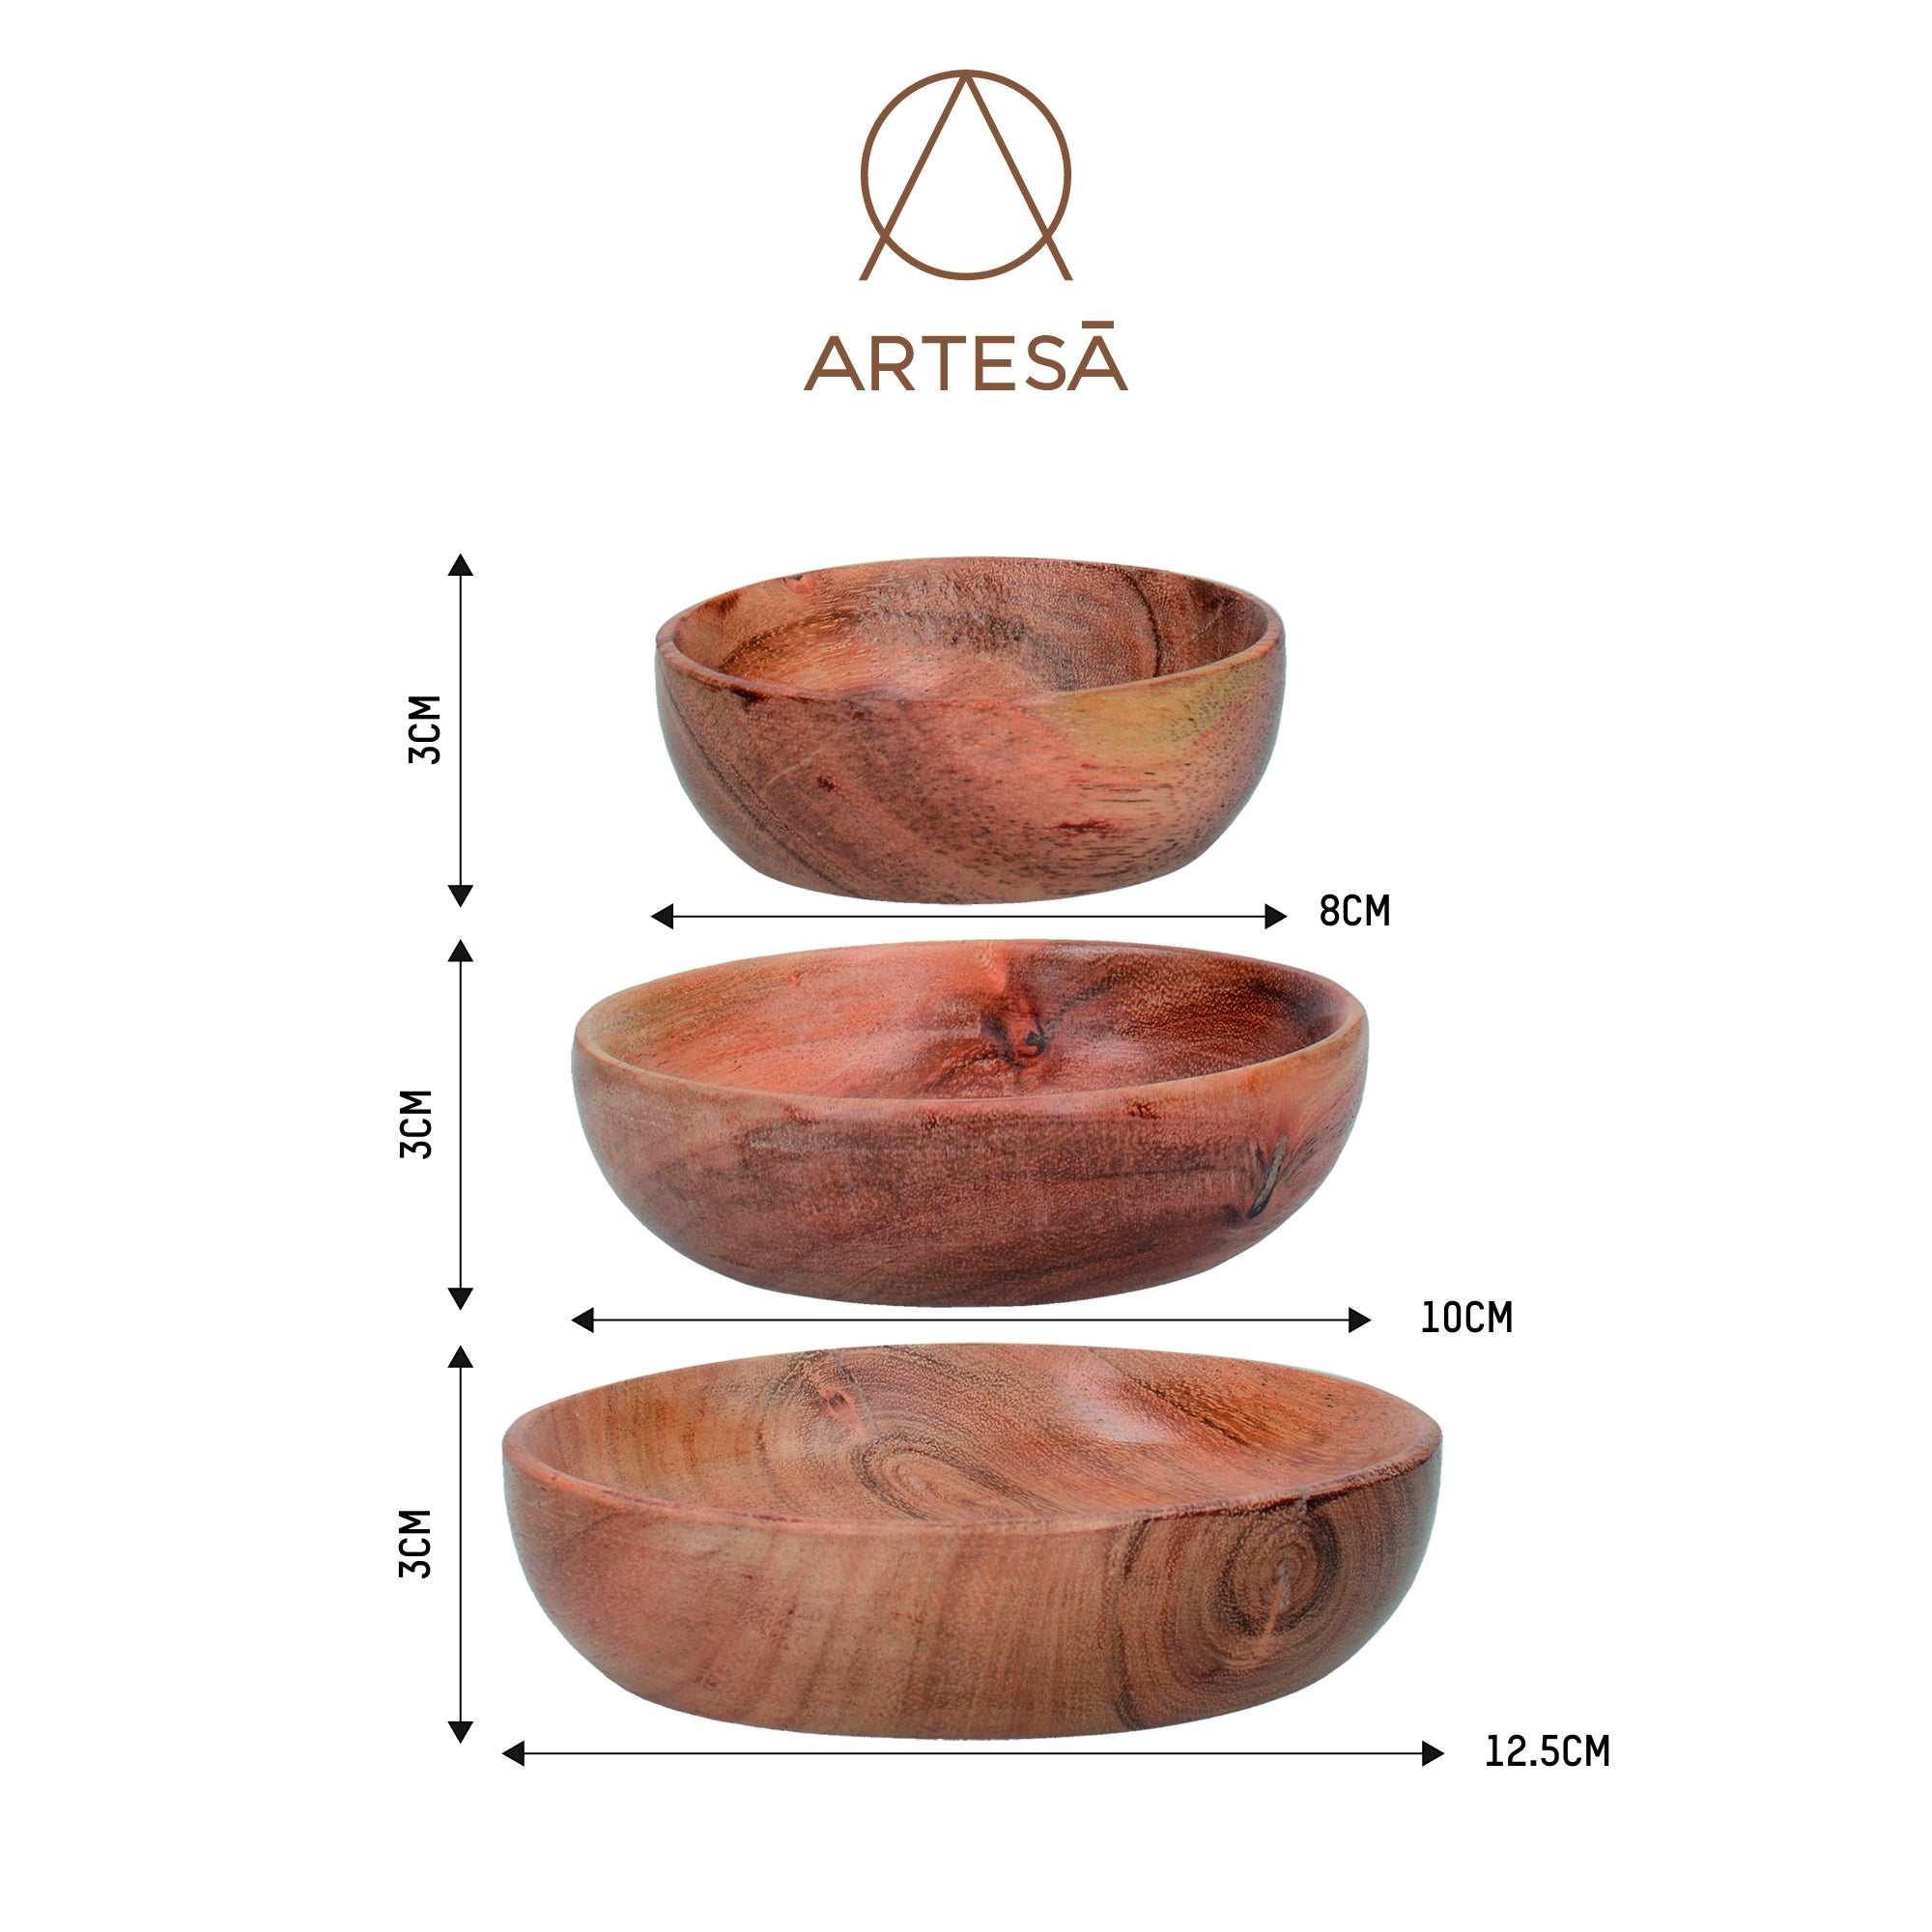 Set of 3 Mikasa Drift Wooden Bowls